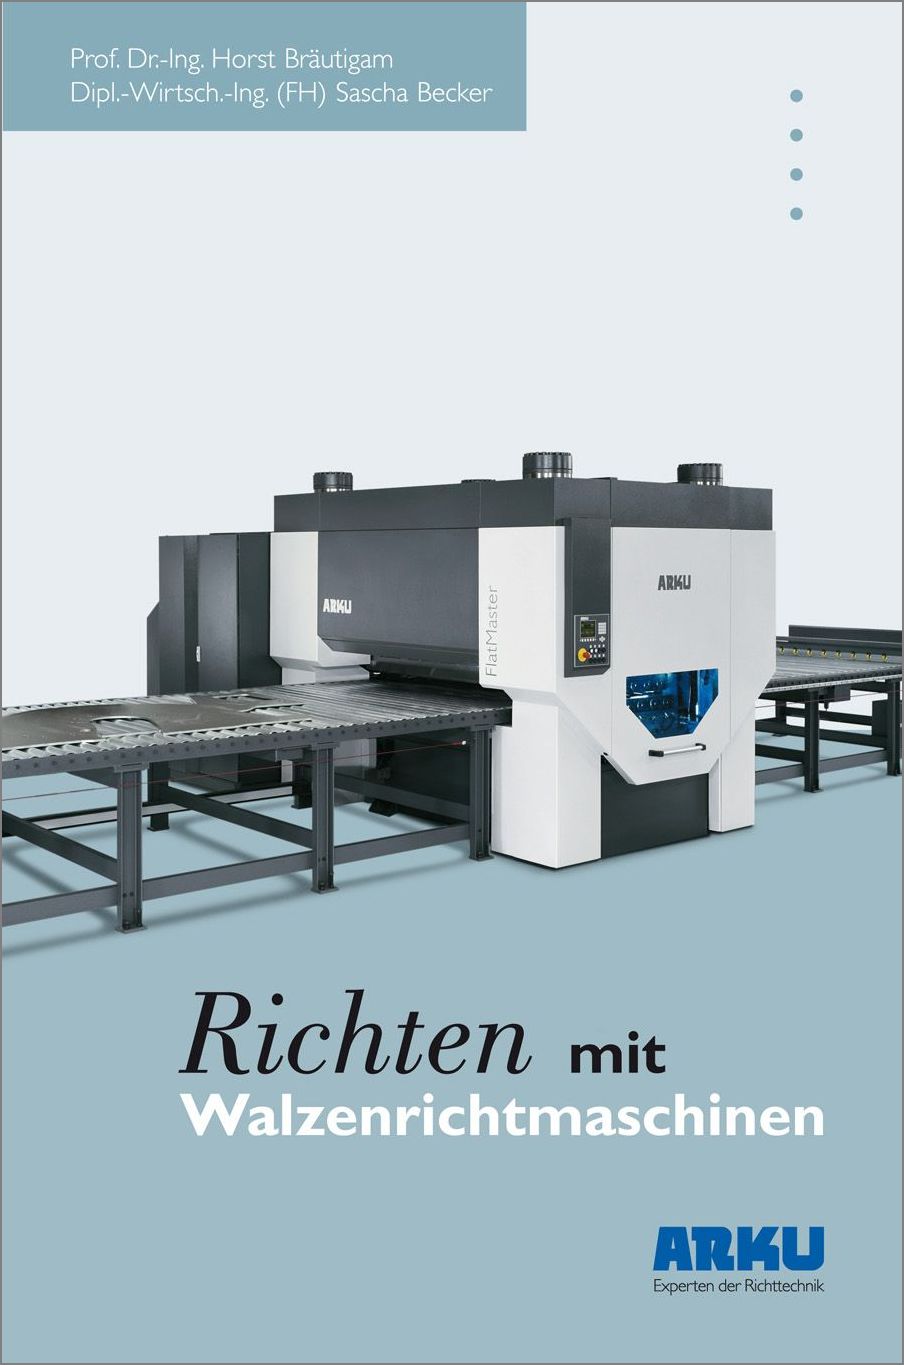 Das Fachbuch "Richten mit Walzenrichtmaschinen" von Horst Bräutigam und Sascha Becker